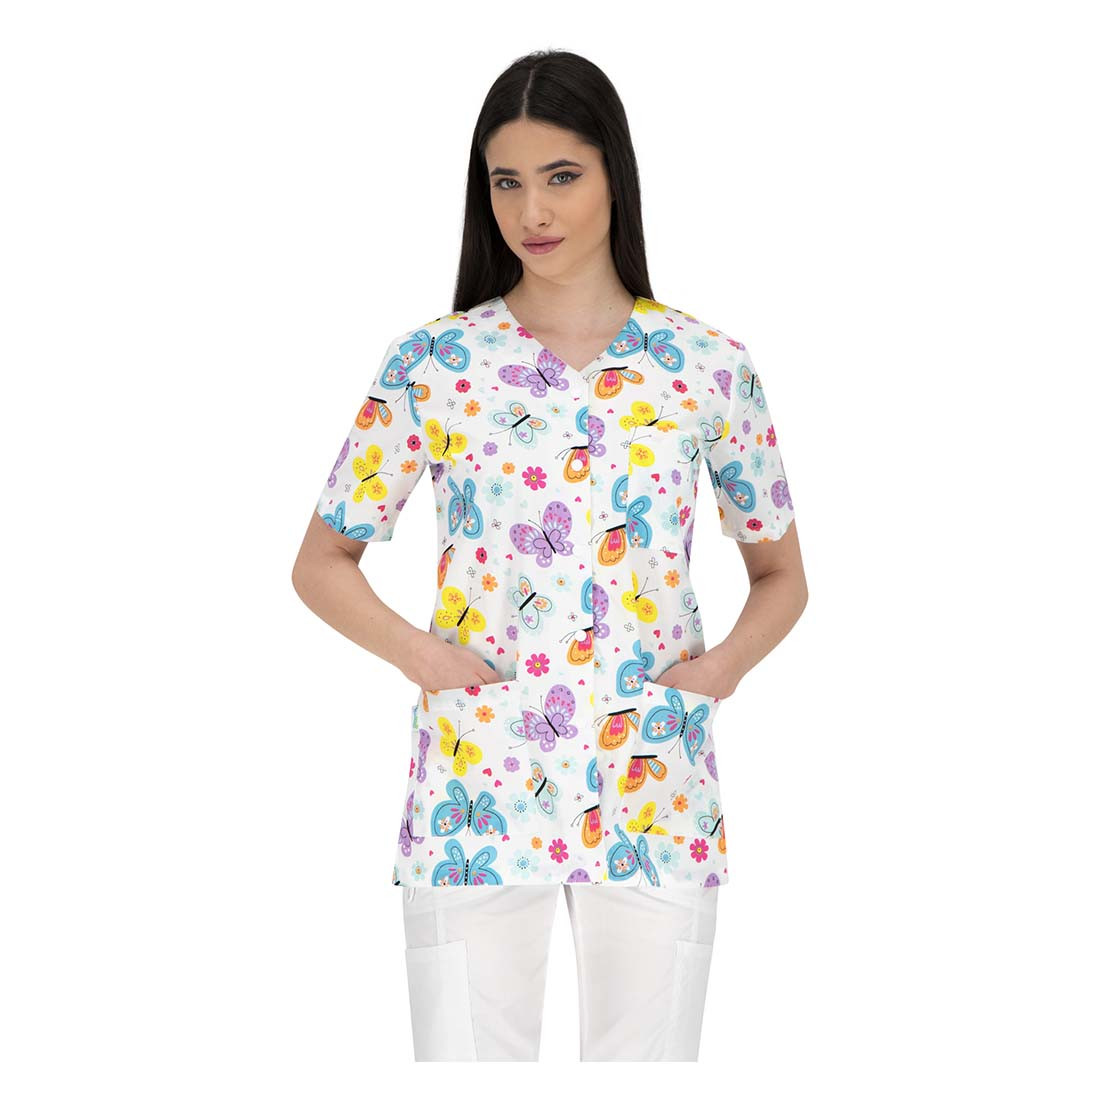 CARINA Damen Medizinische Tunika - Arbeitskleidung